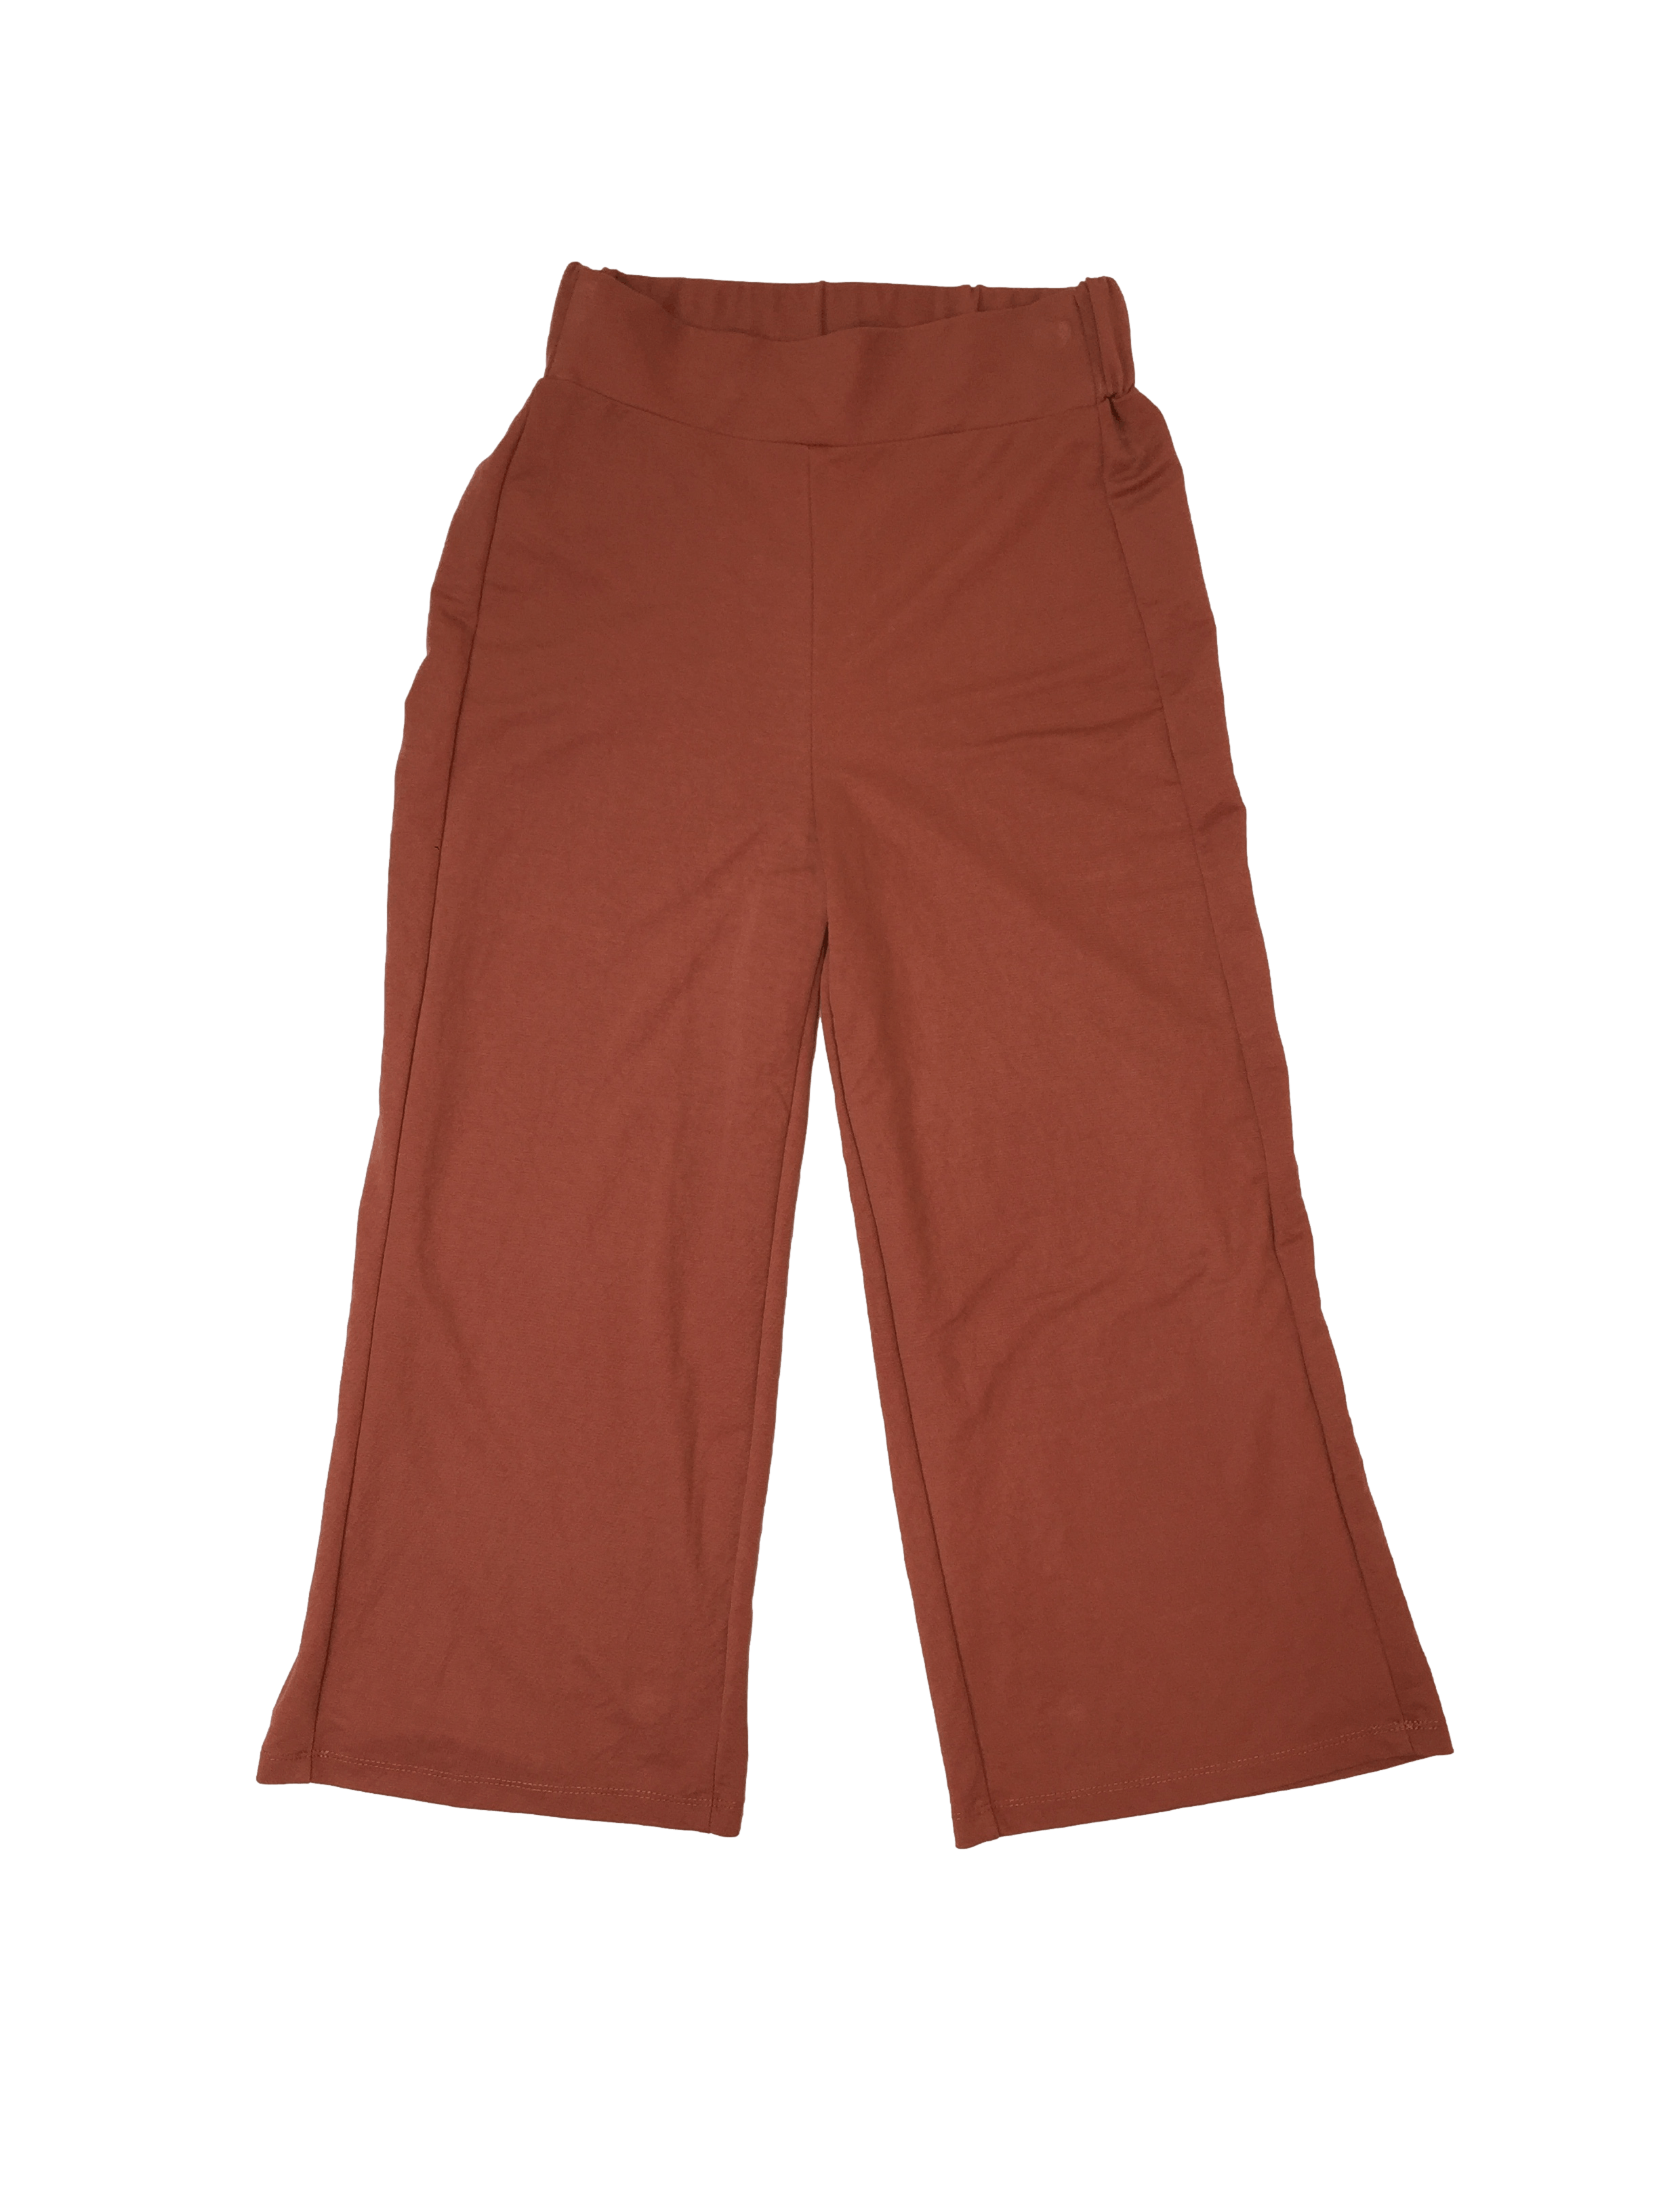 Pantalon  Mango tela punto, culotte, color ladrillo . 66 cm cintura sin estirar . 24 cm de tiro